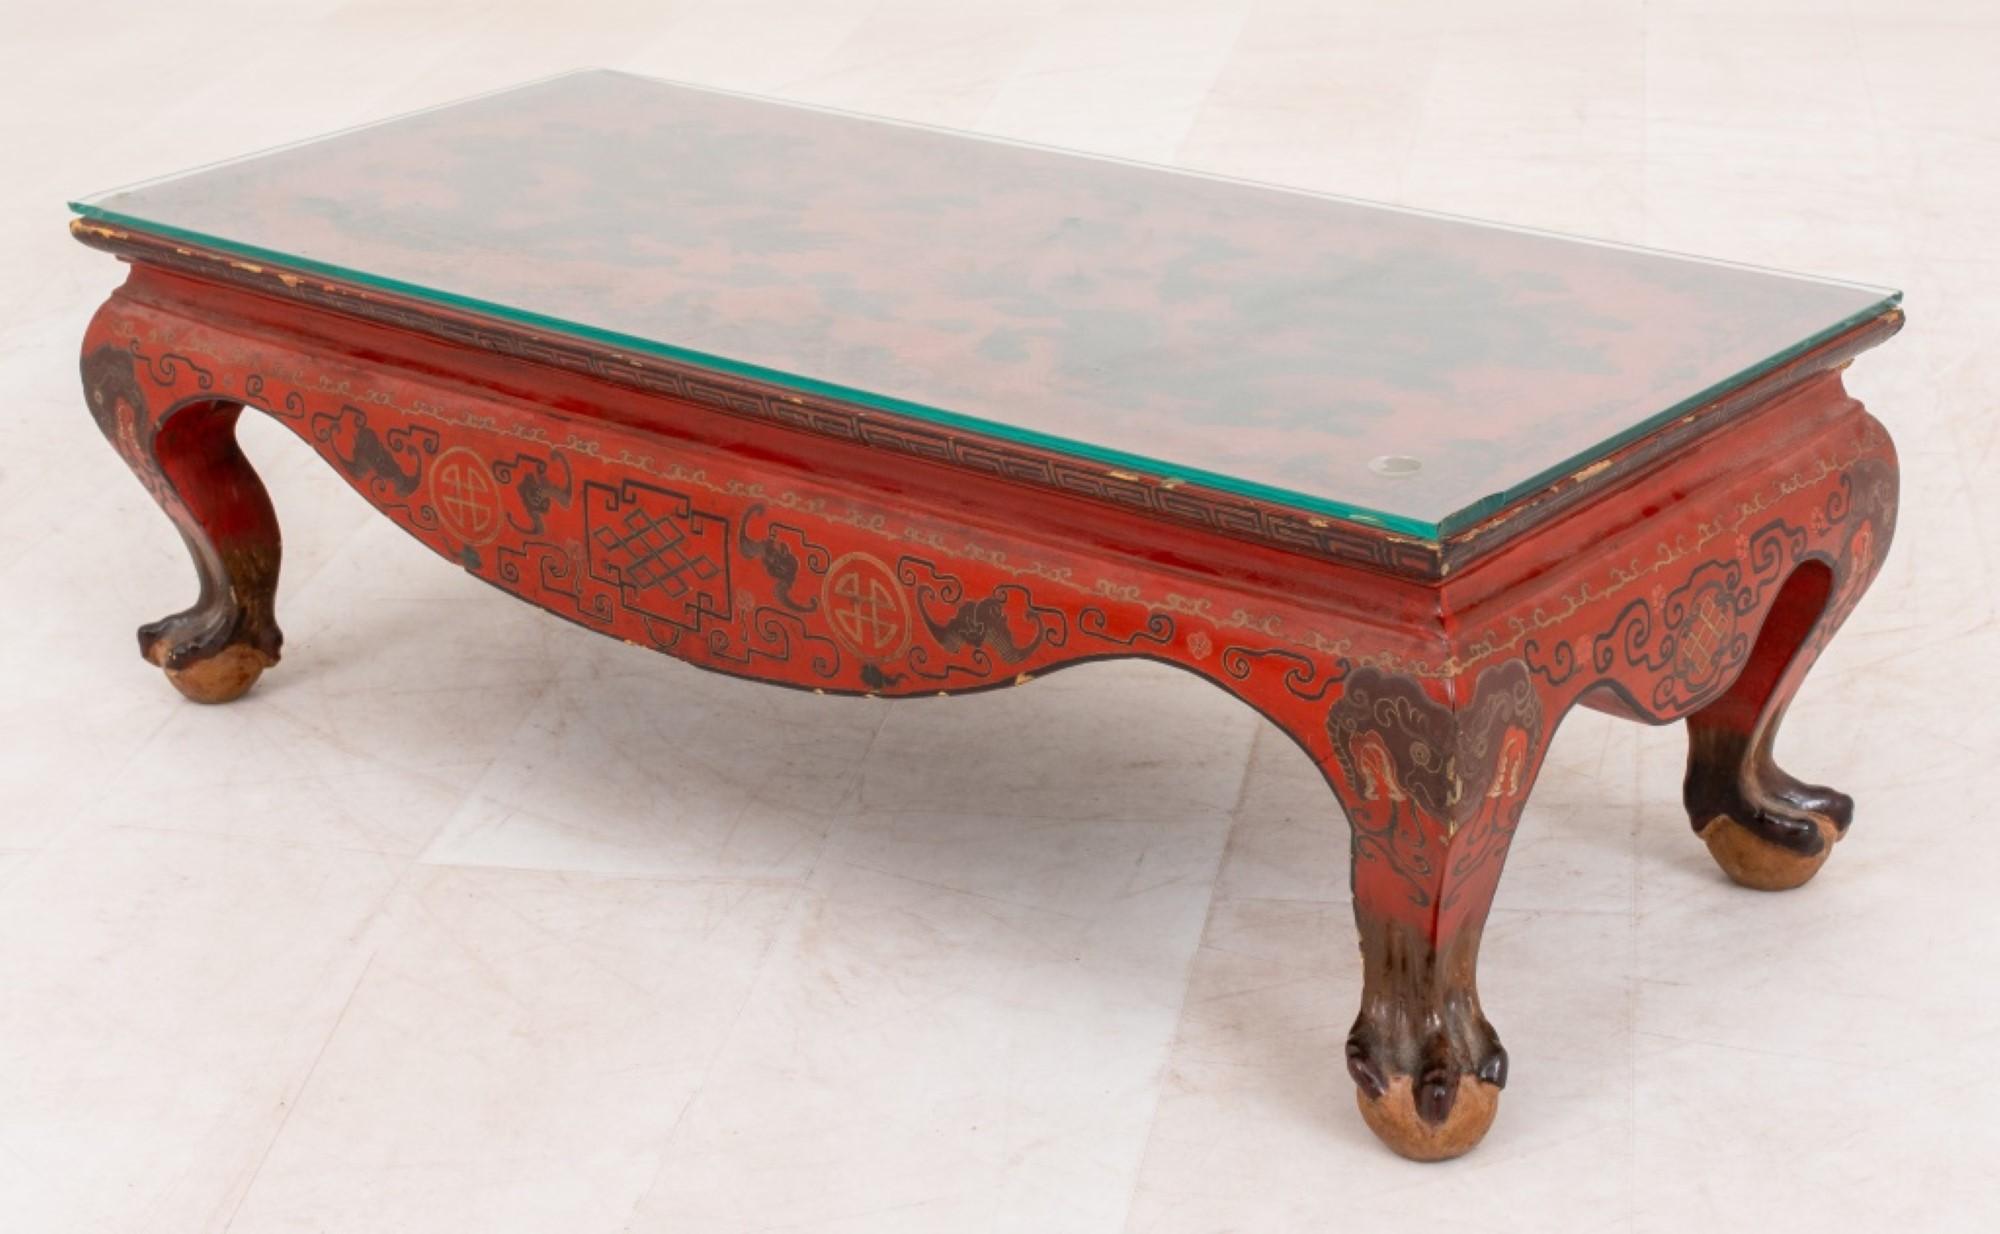 La table basse de style Chinoiserie, laquée rouge et décorée de dorures, mesure approximativement 10,5 pouces de hauteur, 31,5 pouces de longueur et 13,5 pouces de profondeur (mesures approximatives).




